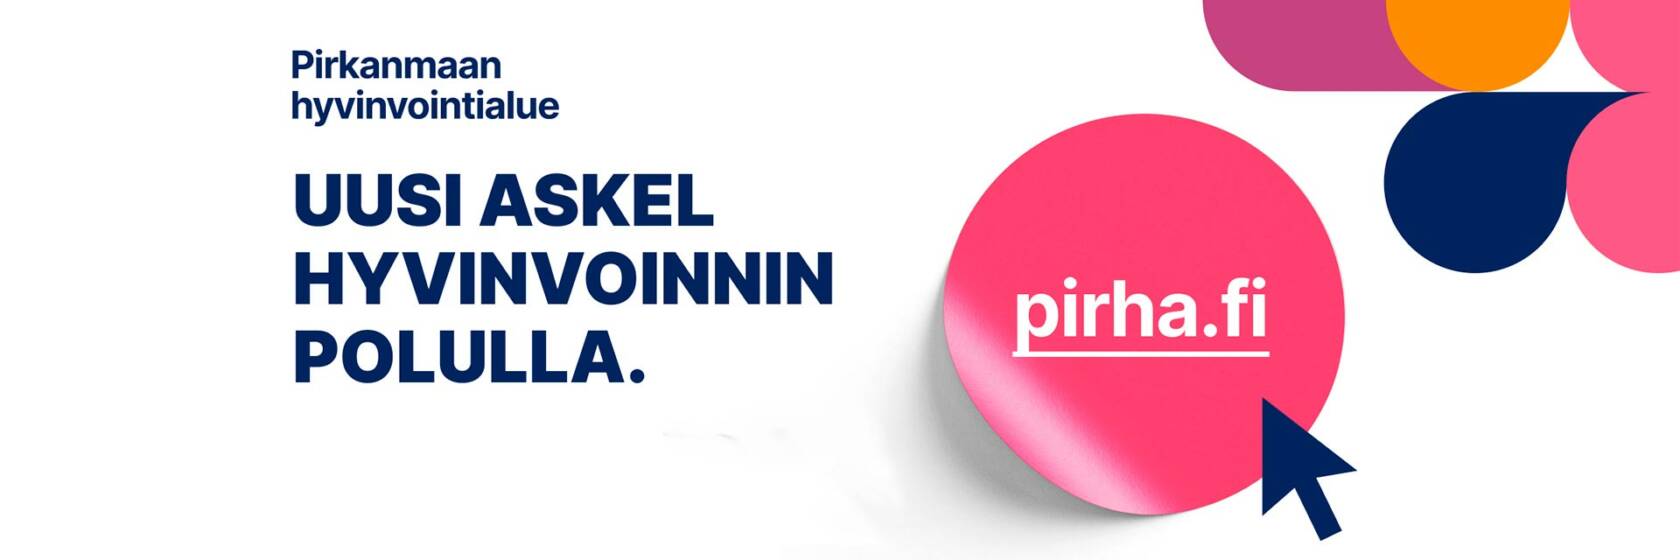 Pirha.fi. Pirkanmaan hyvinvointialue. Uusi askel hyvinvoinnin polulla.